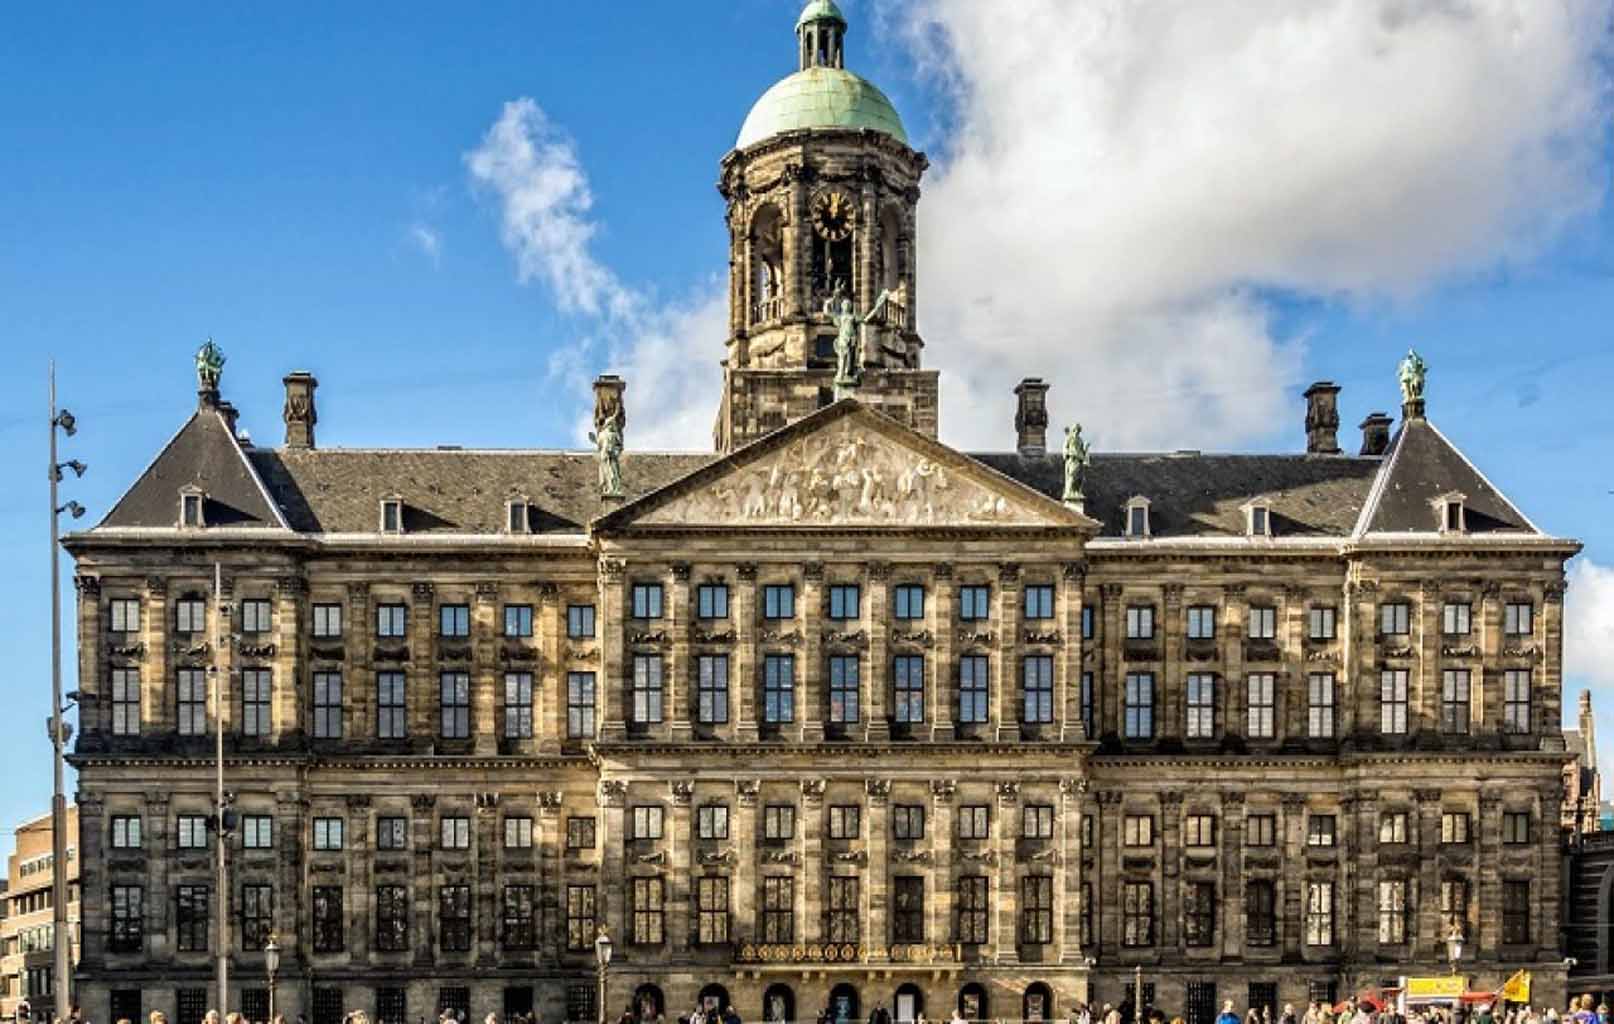 Cung điện Hoàng Gia Amsterdam